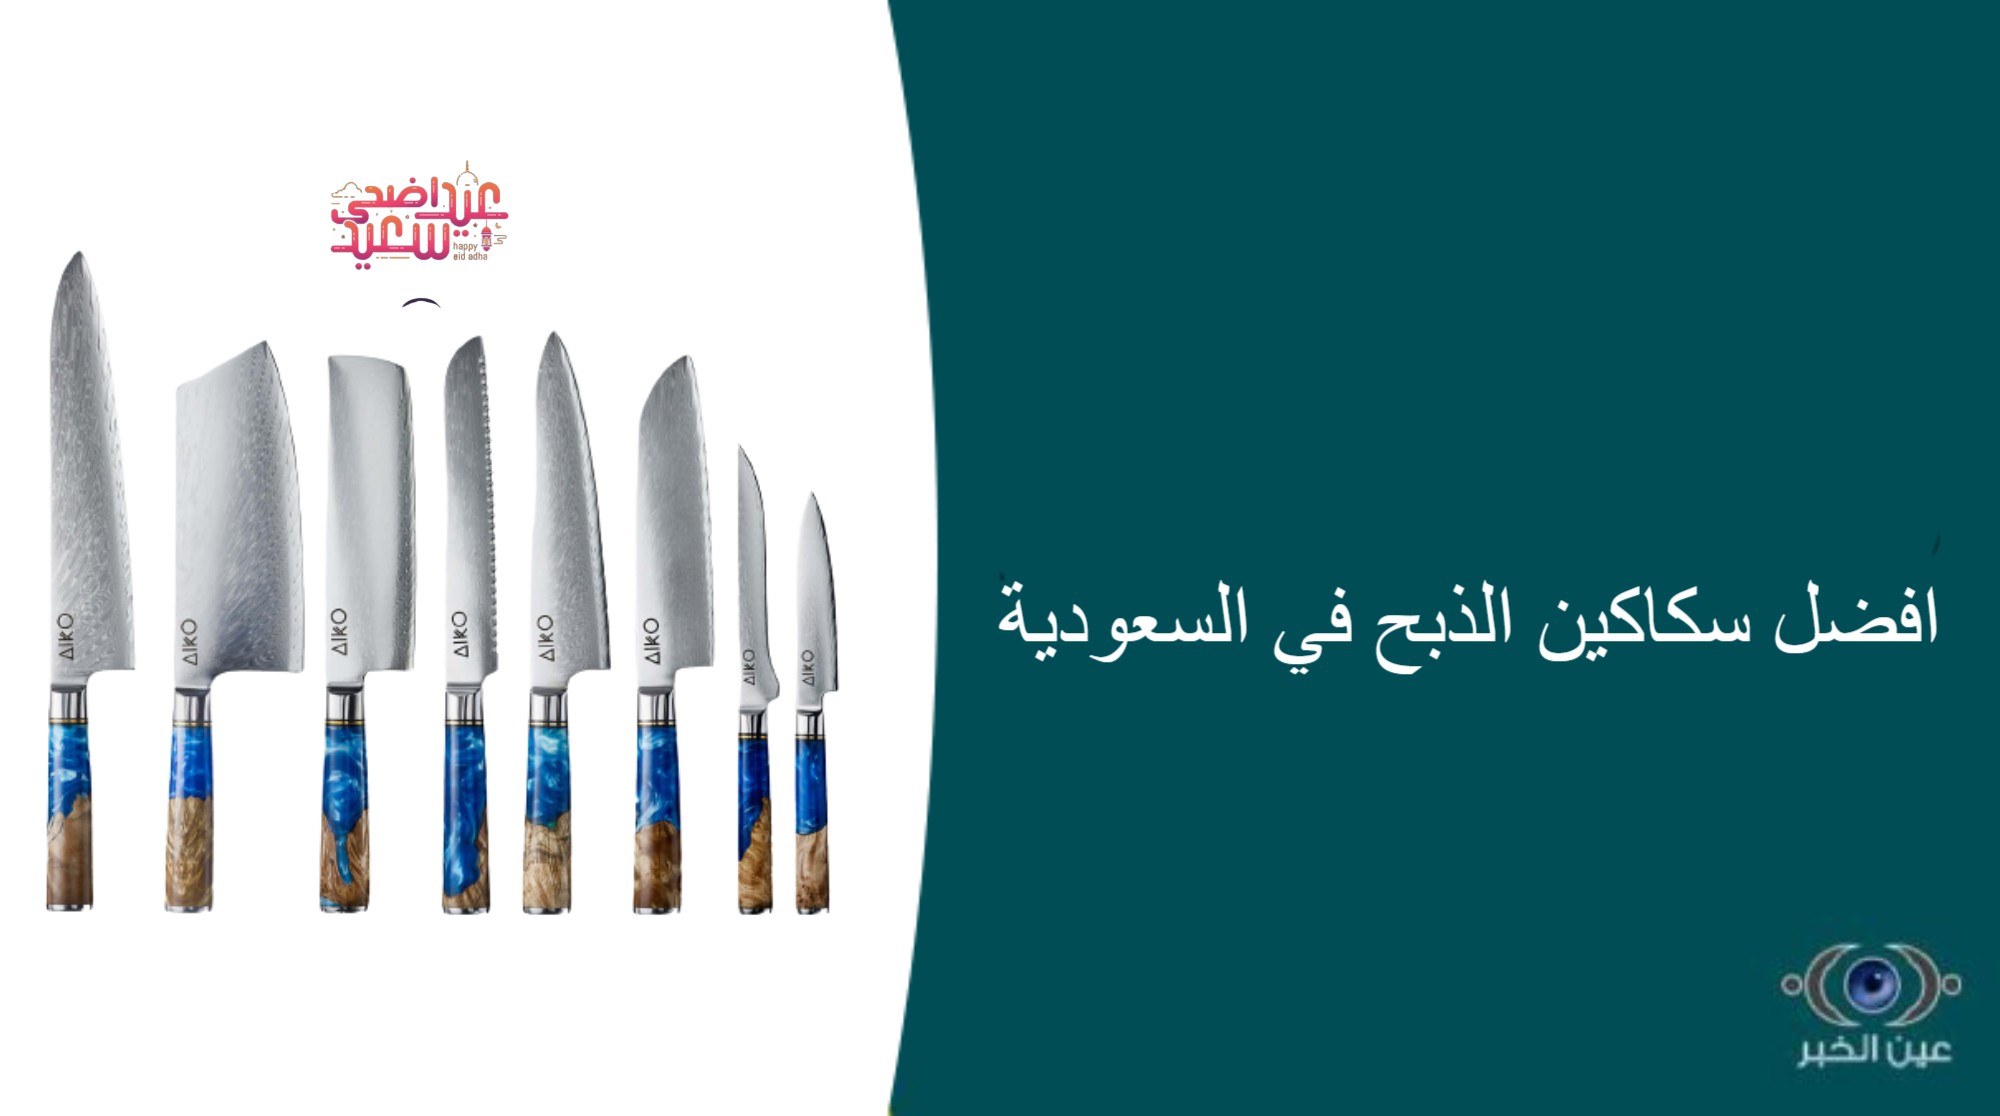 افضل سكاكين الذبح في السعودية - افضل سكاكين الذبح في السعودية